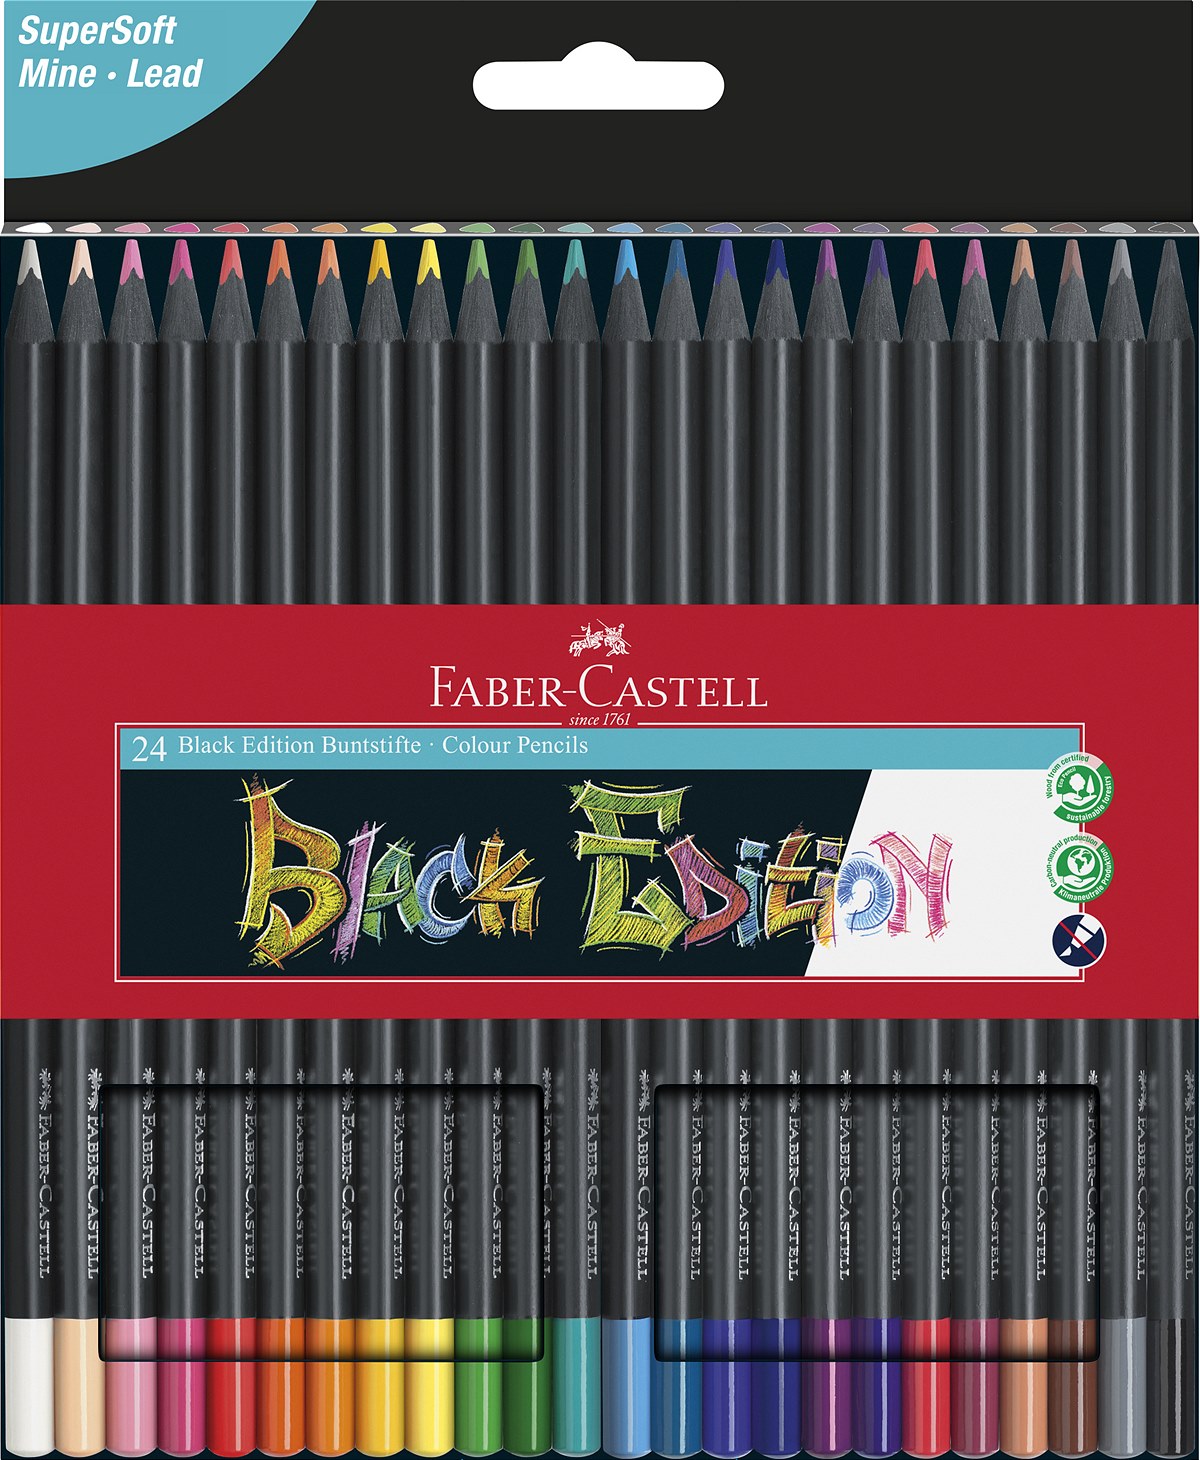 Faber-Castell_BlackEditioni_24er_EUR 16,00